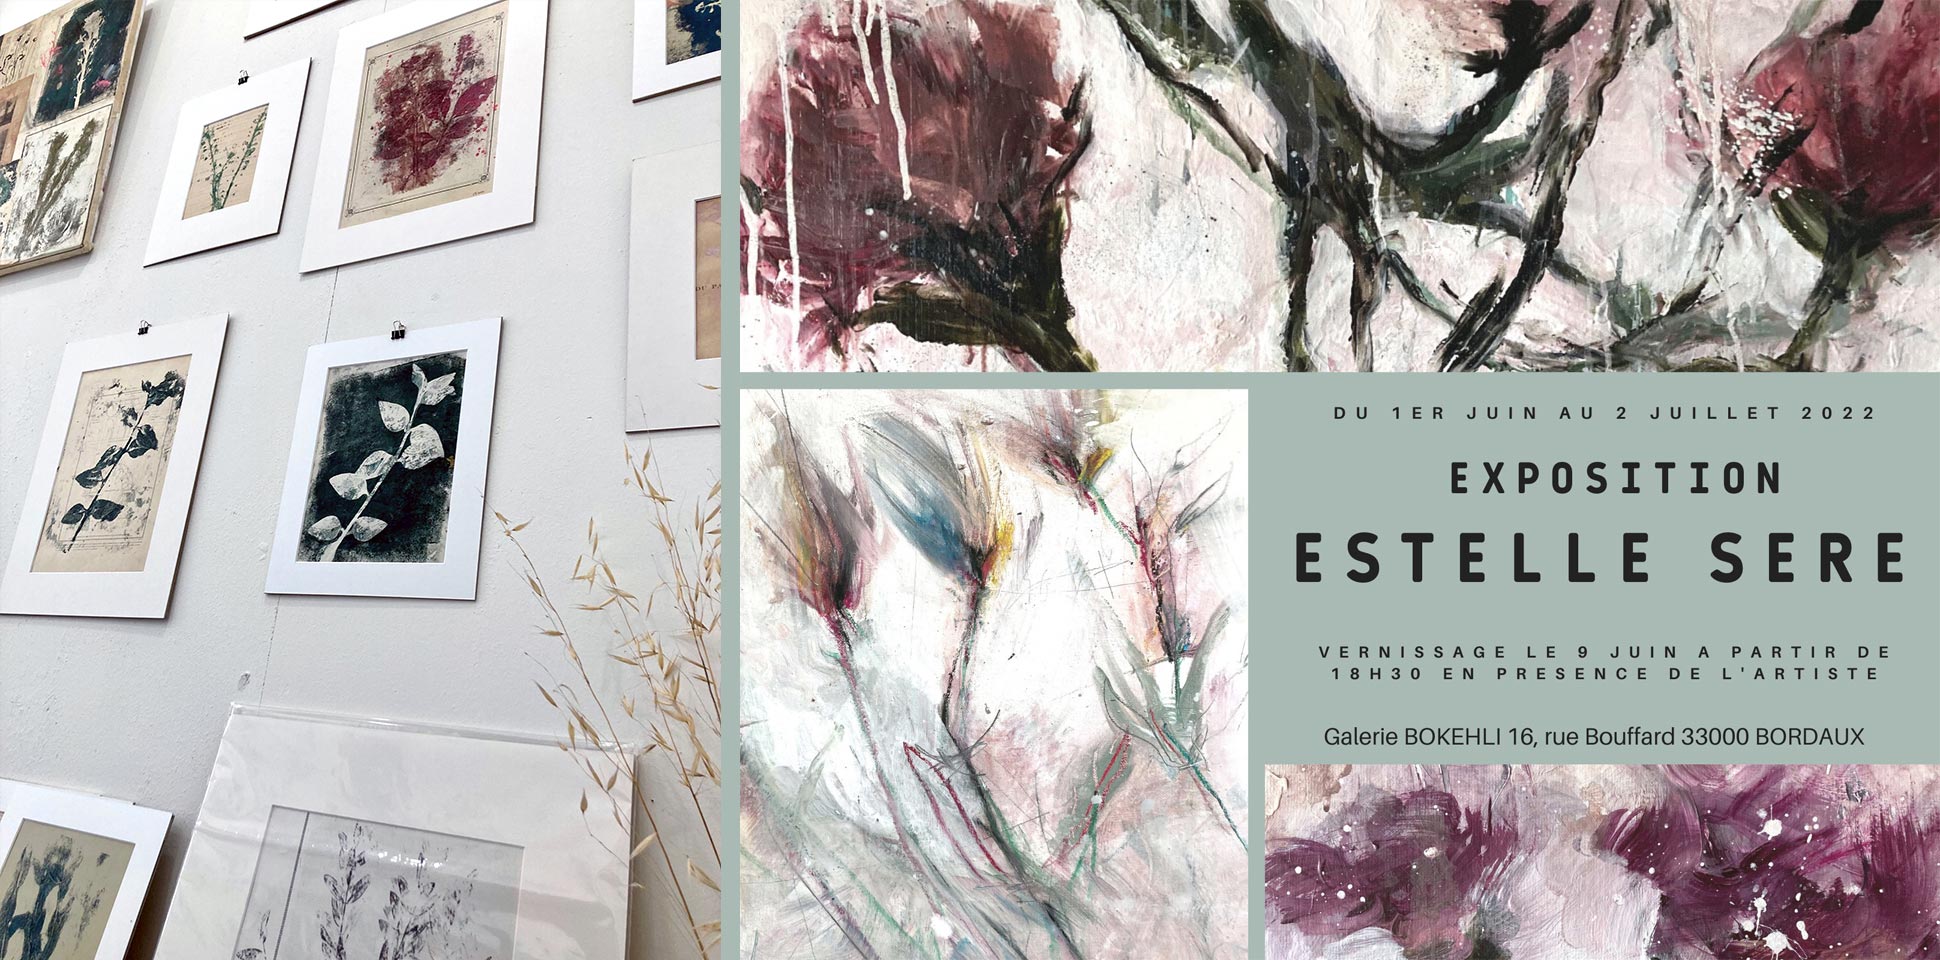 Affiche exposition Estelle Séré - Peintures Galerie Bokehli à Bordeaux Juin 2022